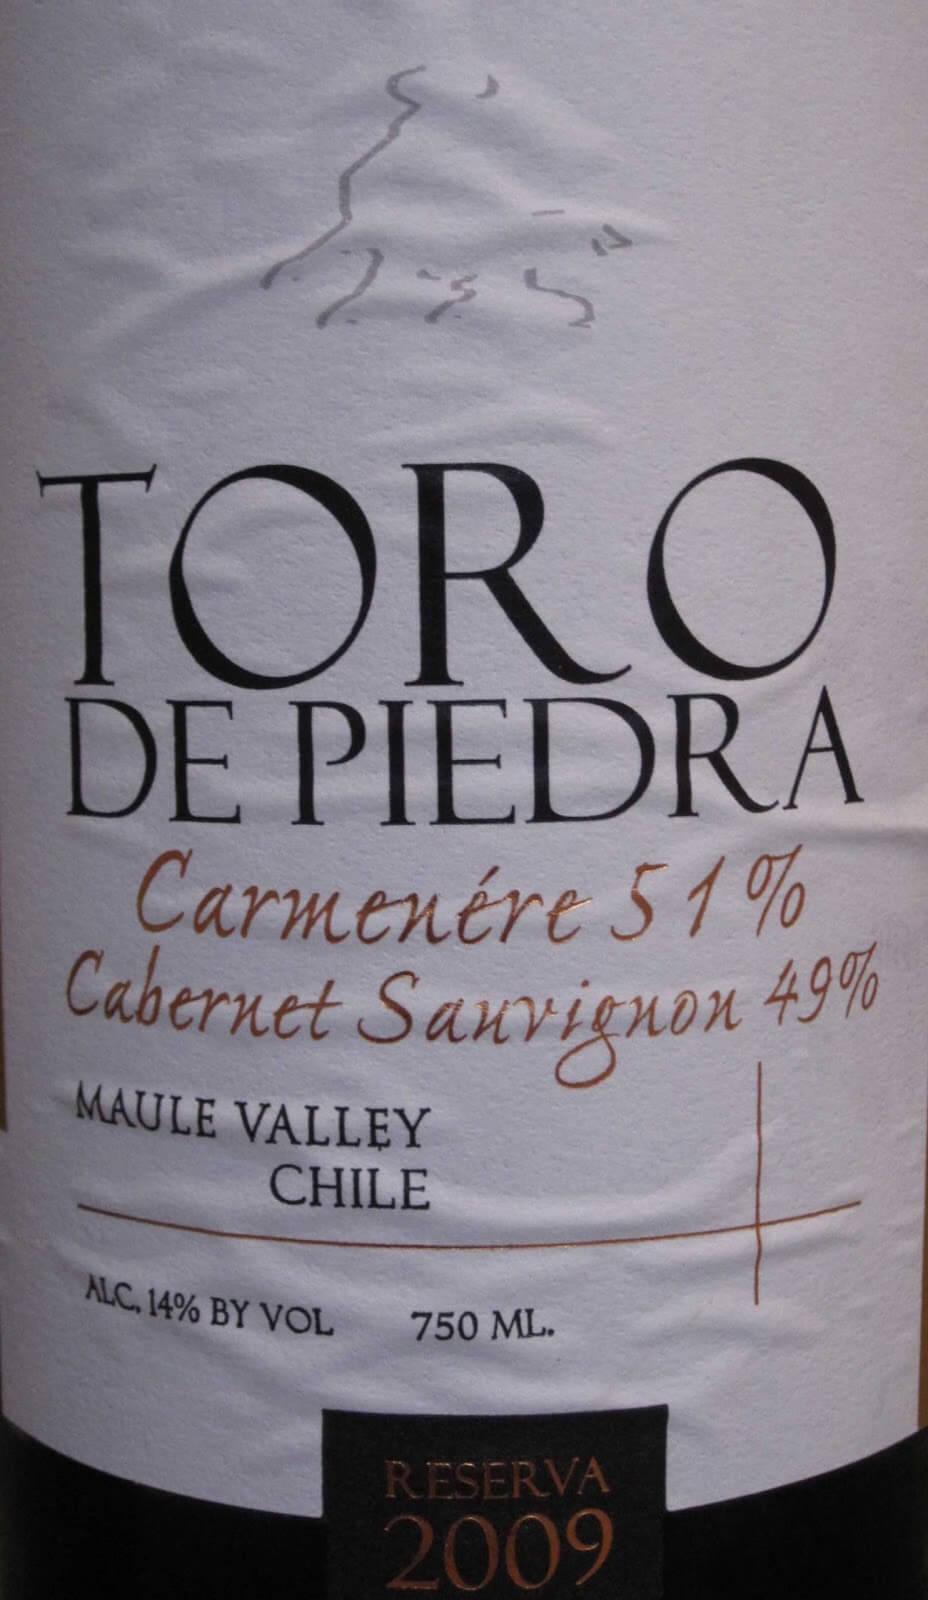 La ruta del vino en Chile
